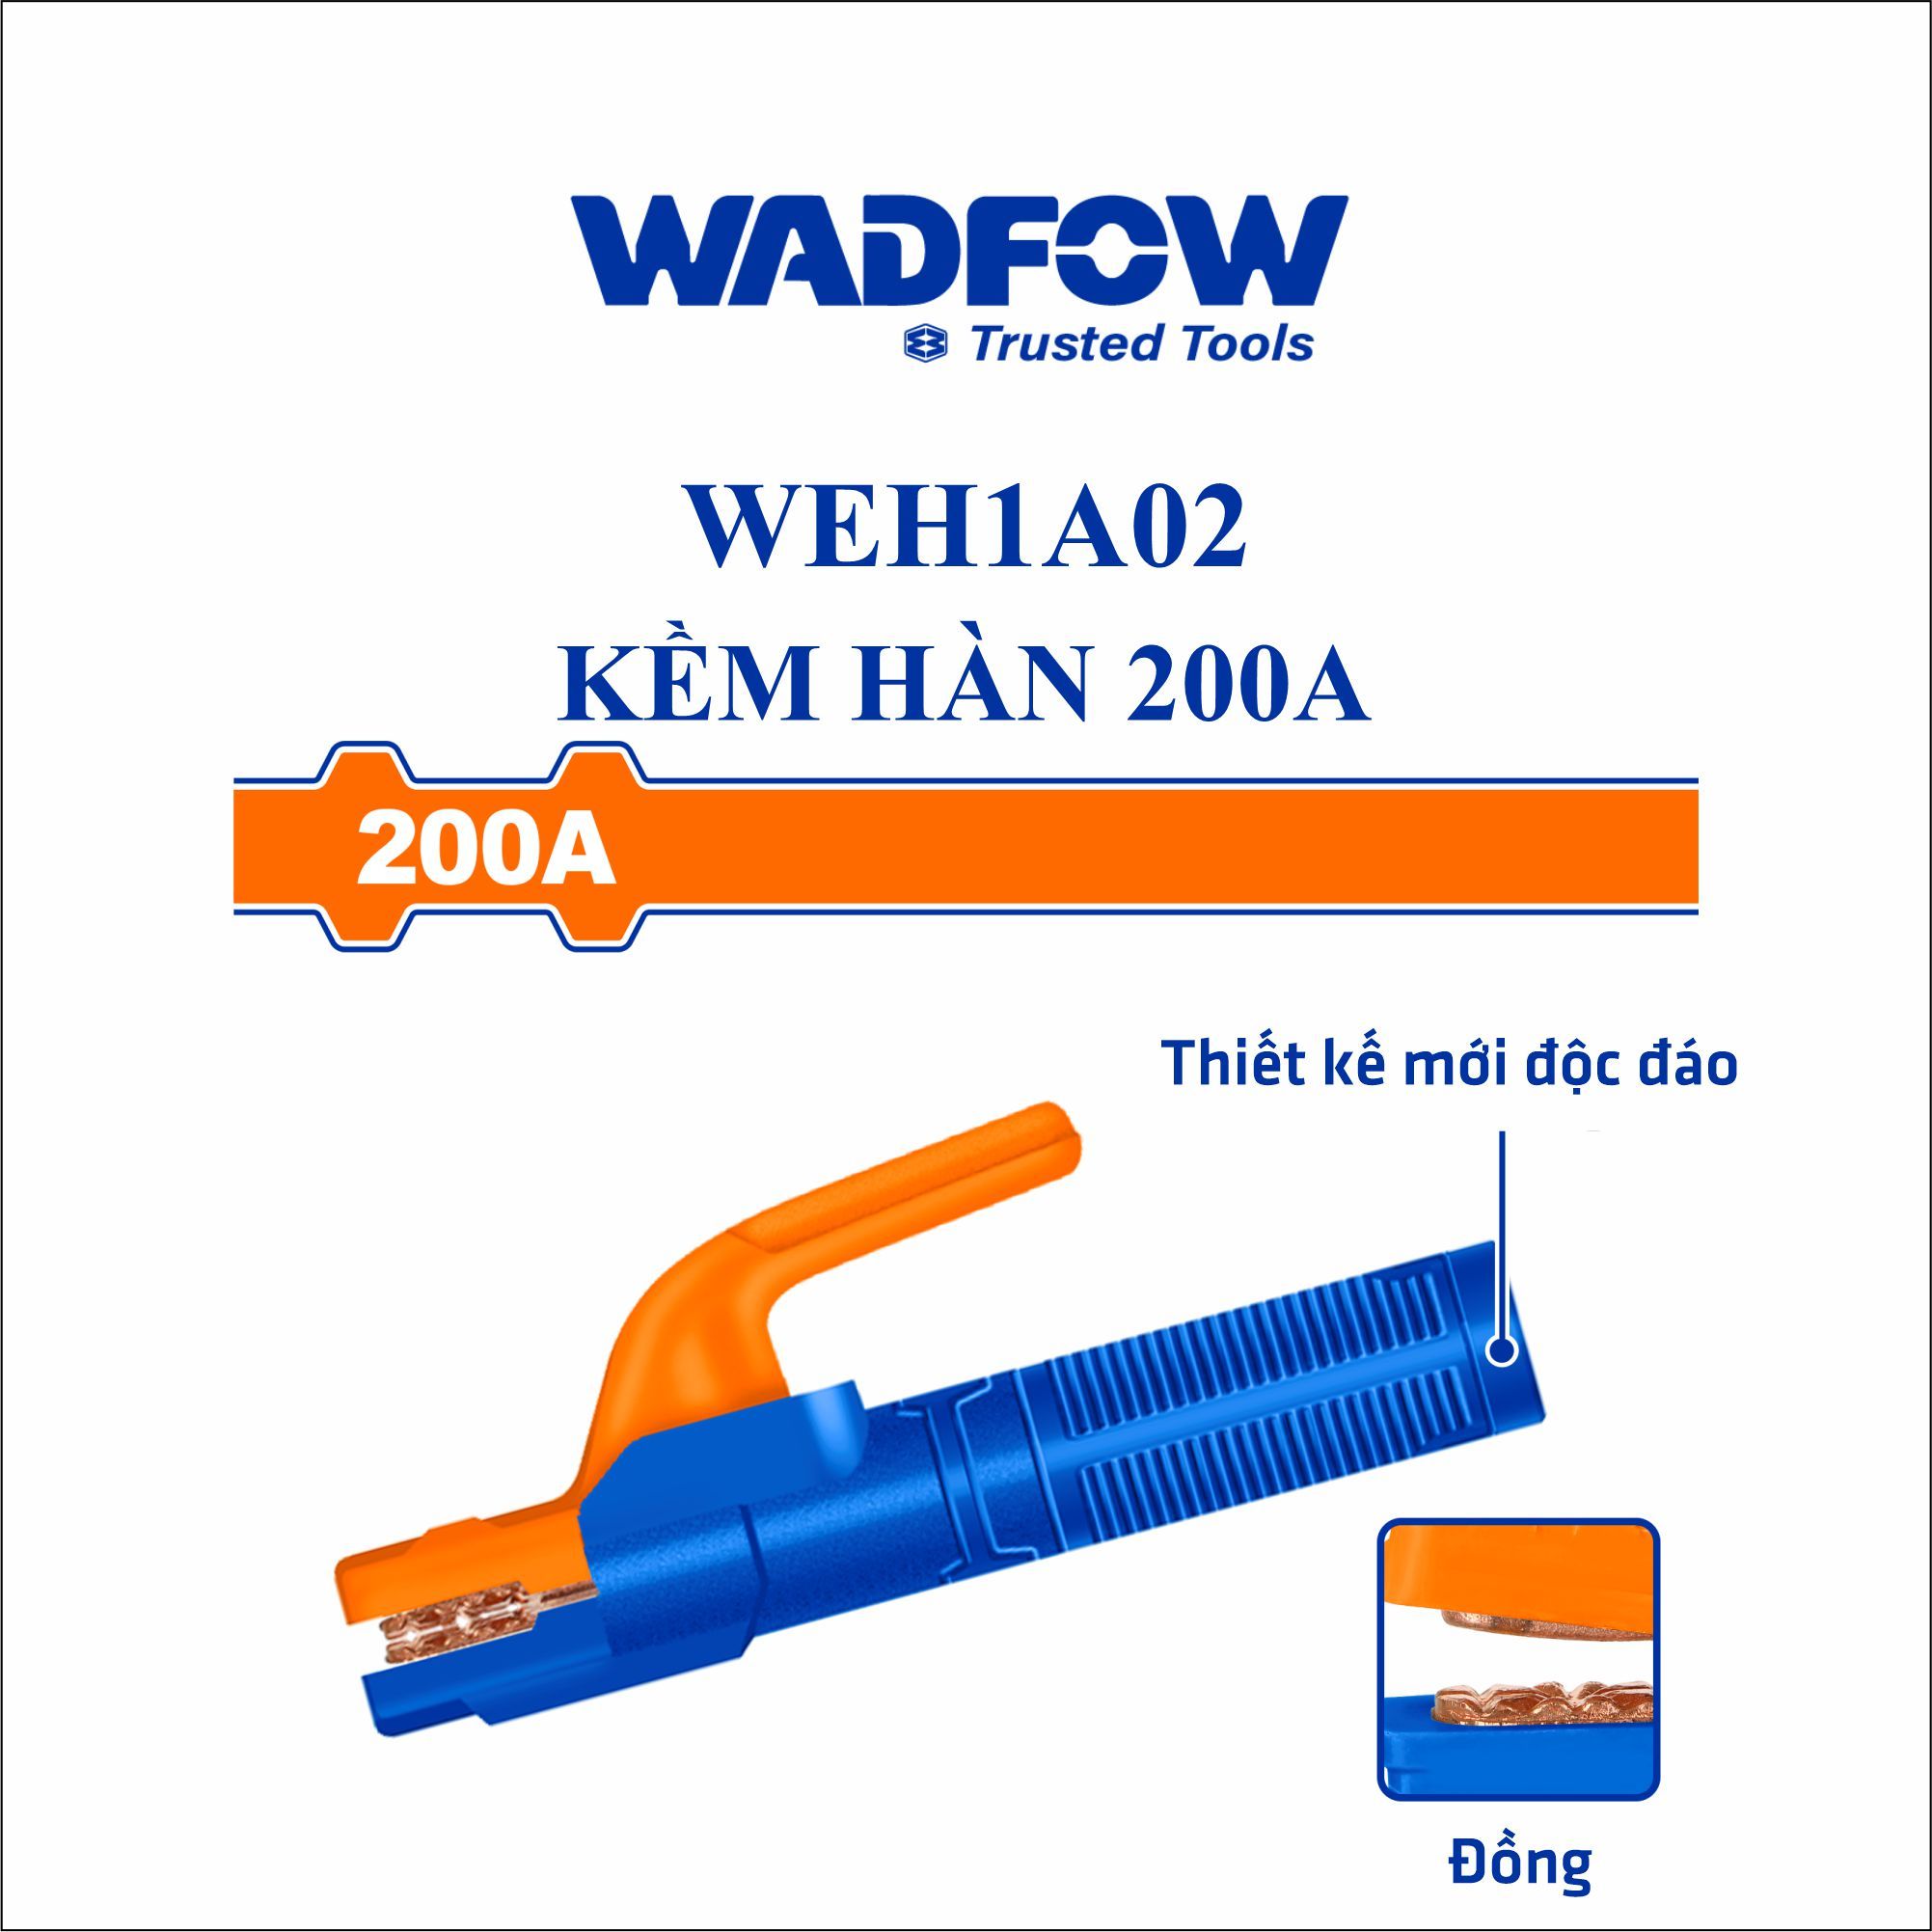  Kìm hàn 200A WADFOW WEH1A02 